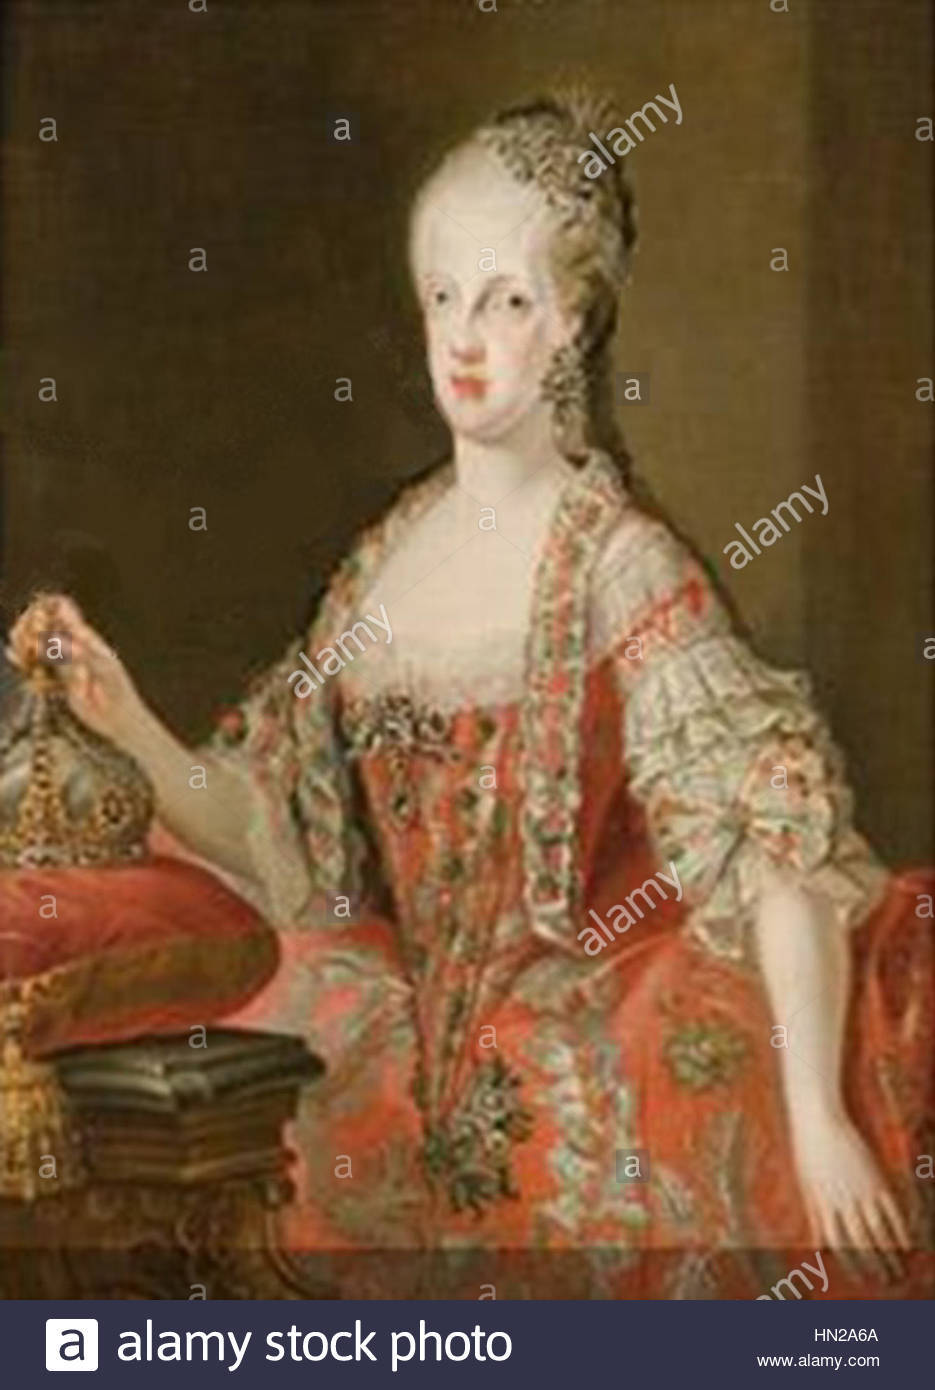 玛丽亚卡洛琳娜是那不勒斯和西西里的女王,是国王斐迪南四世三世的妻子。作为她丈夫的王国的事实上的统治者,玛丽亚卡罗莱纳监督了许多改革的颁布,包括取消对共济会的禁令,在她最喜欢的约翰阿克顿,第六男爵的领导下扩大海军,以及驱逐西班牙的影响。她是开明专制主义的支持者,直到法国大革命爆发,为了防止其思想流行,她让那不勒斯成为一个警察国家。